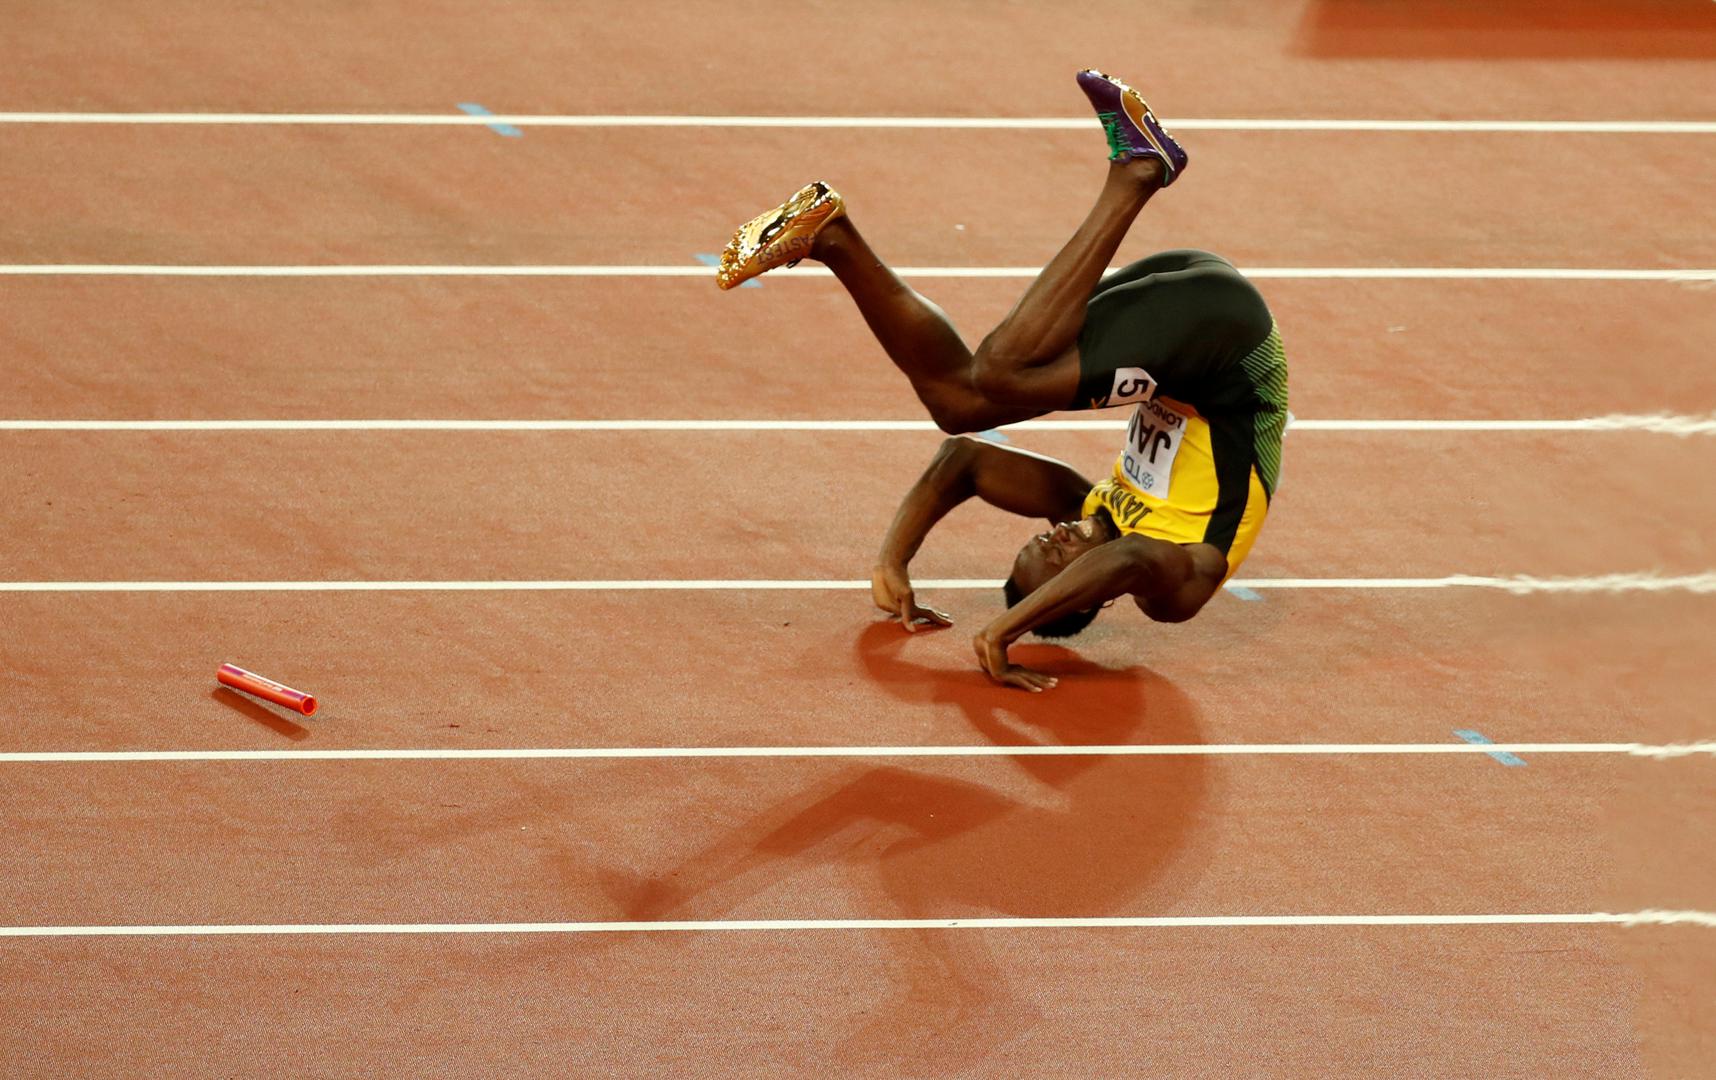 Jamajčanin Usain Bolt, aktualni svjetski rekorder na 100 metara (9,58 sekundi) i na 200 metara 19,19 sekundi) pao je u utrci štafeta 4 X 100 metara u finalu svjetskog atletskog prvenstva u Londonu. Bio je to tužnjikavi kraj jedne po svemu pregoleme karijere 